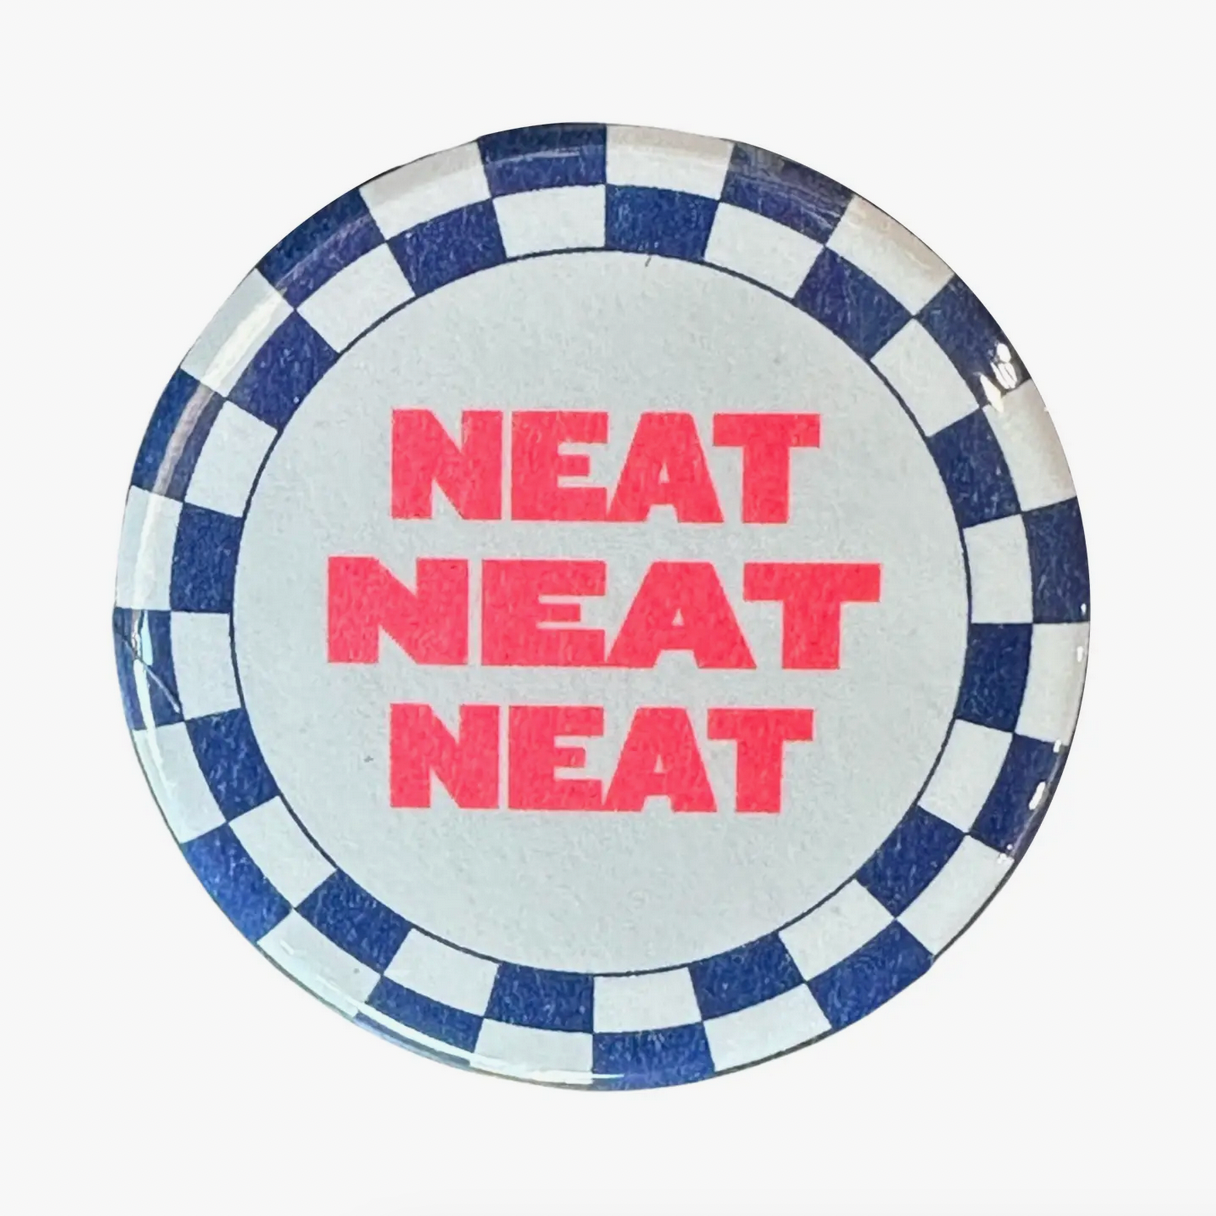 Neat Neat Neat Button - 1.75"